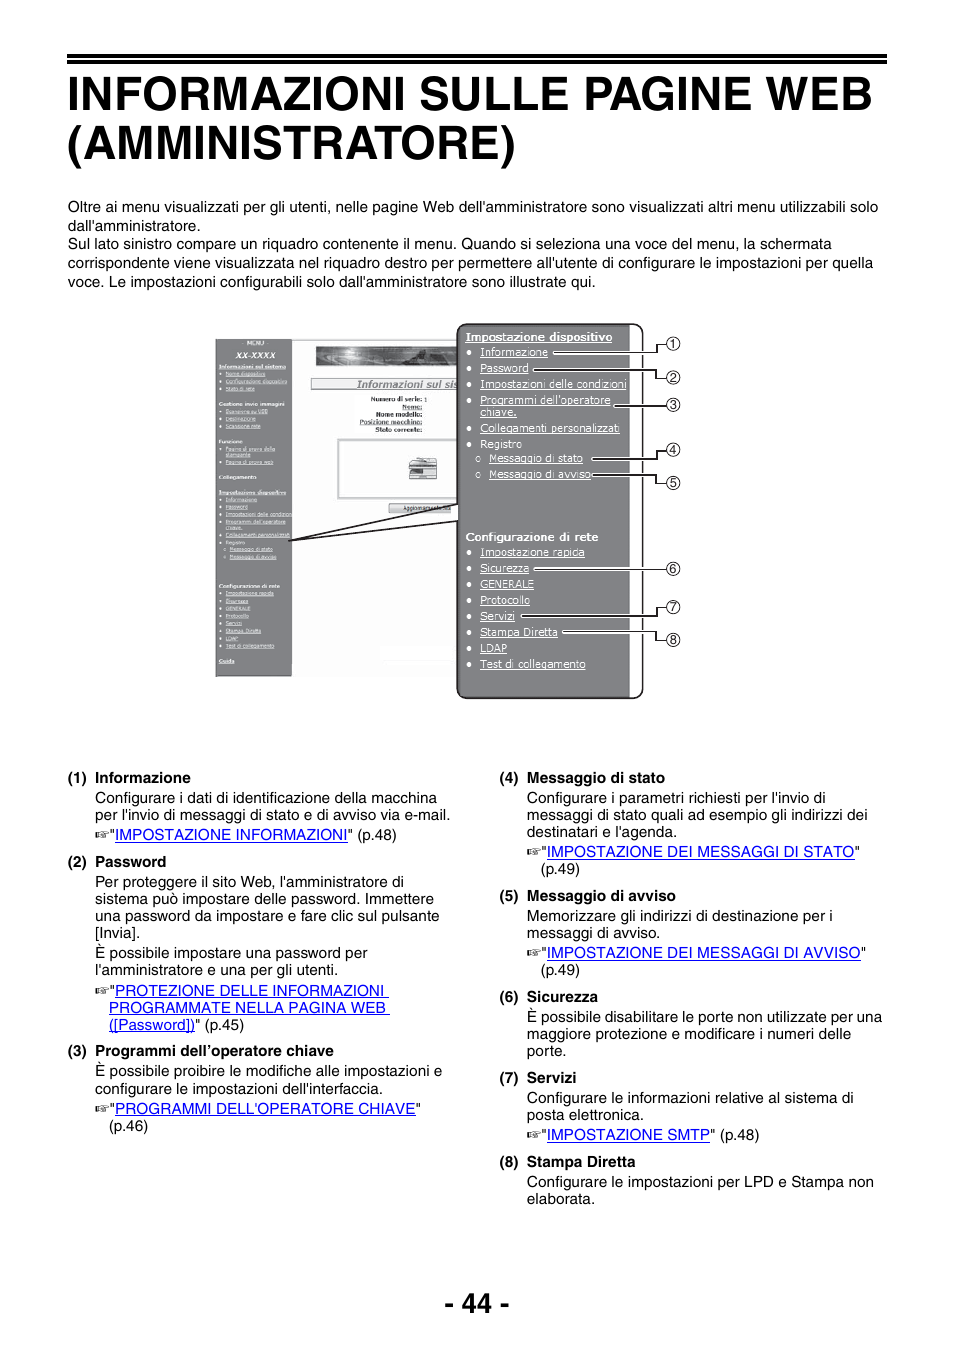 Informazioni sulle pagine web (amministratore), Informazioni sulle pagine web, Amministratore) | P.44) | Sharp MX-B201D Manuale d'uso | Pagina 44 / 80